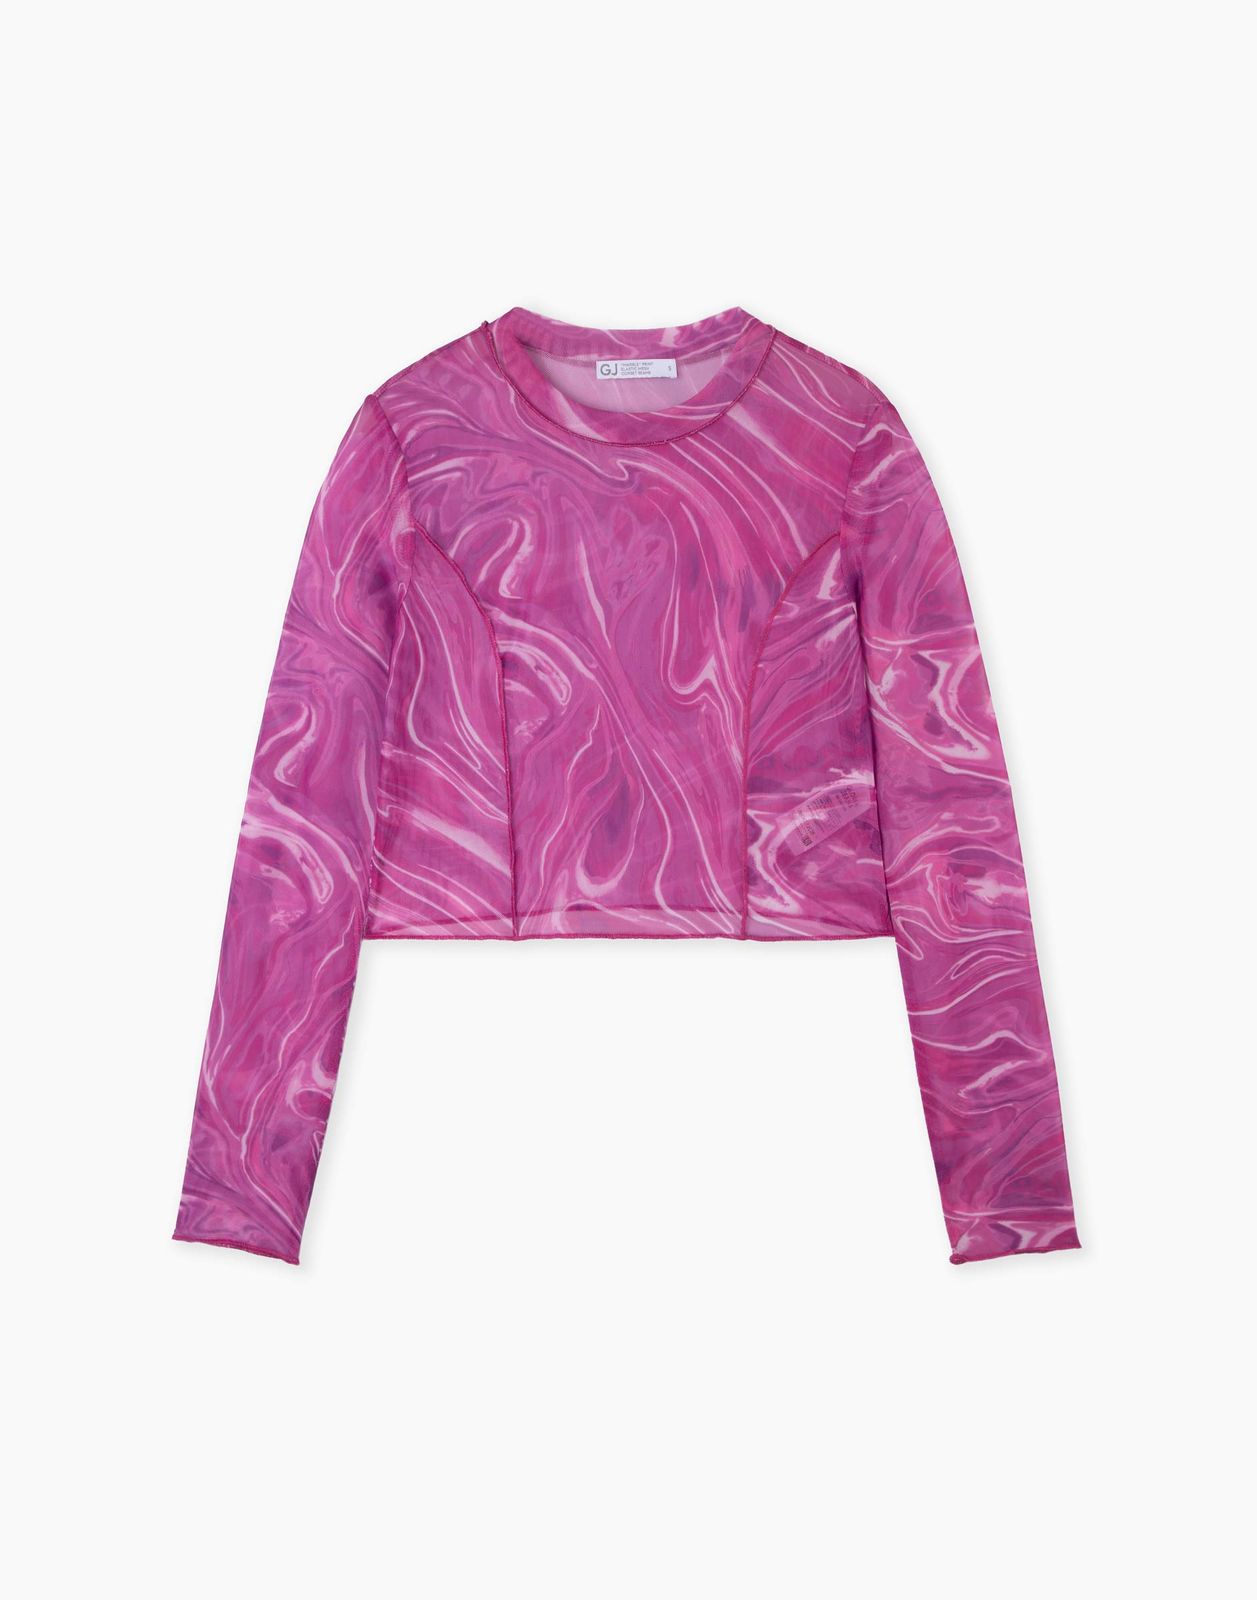 Лонгслив Gloria Jeans GKT023143 розовый/разноцветный L/170 женский